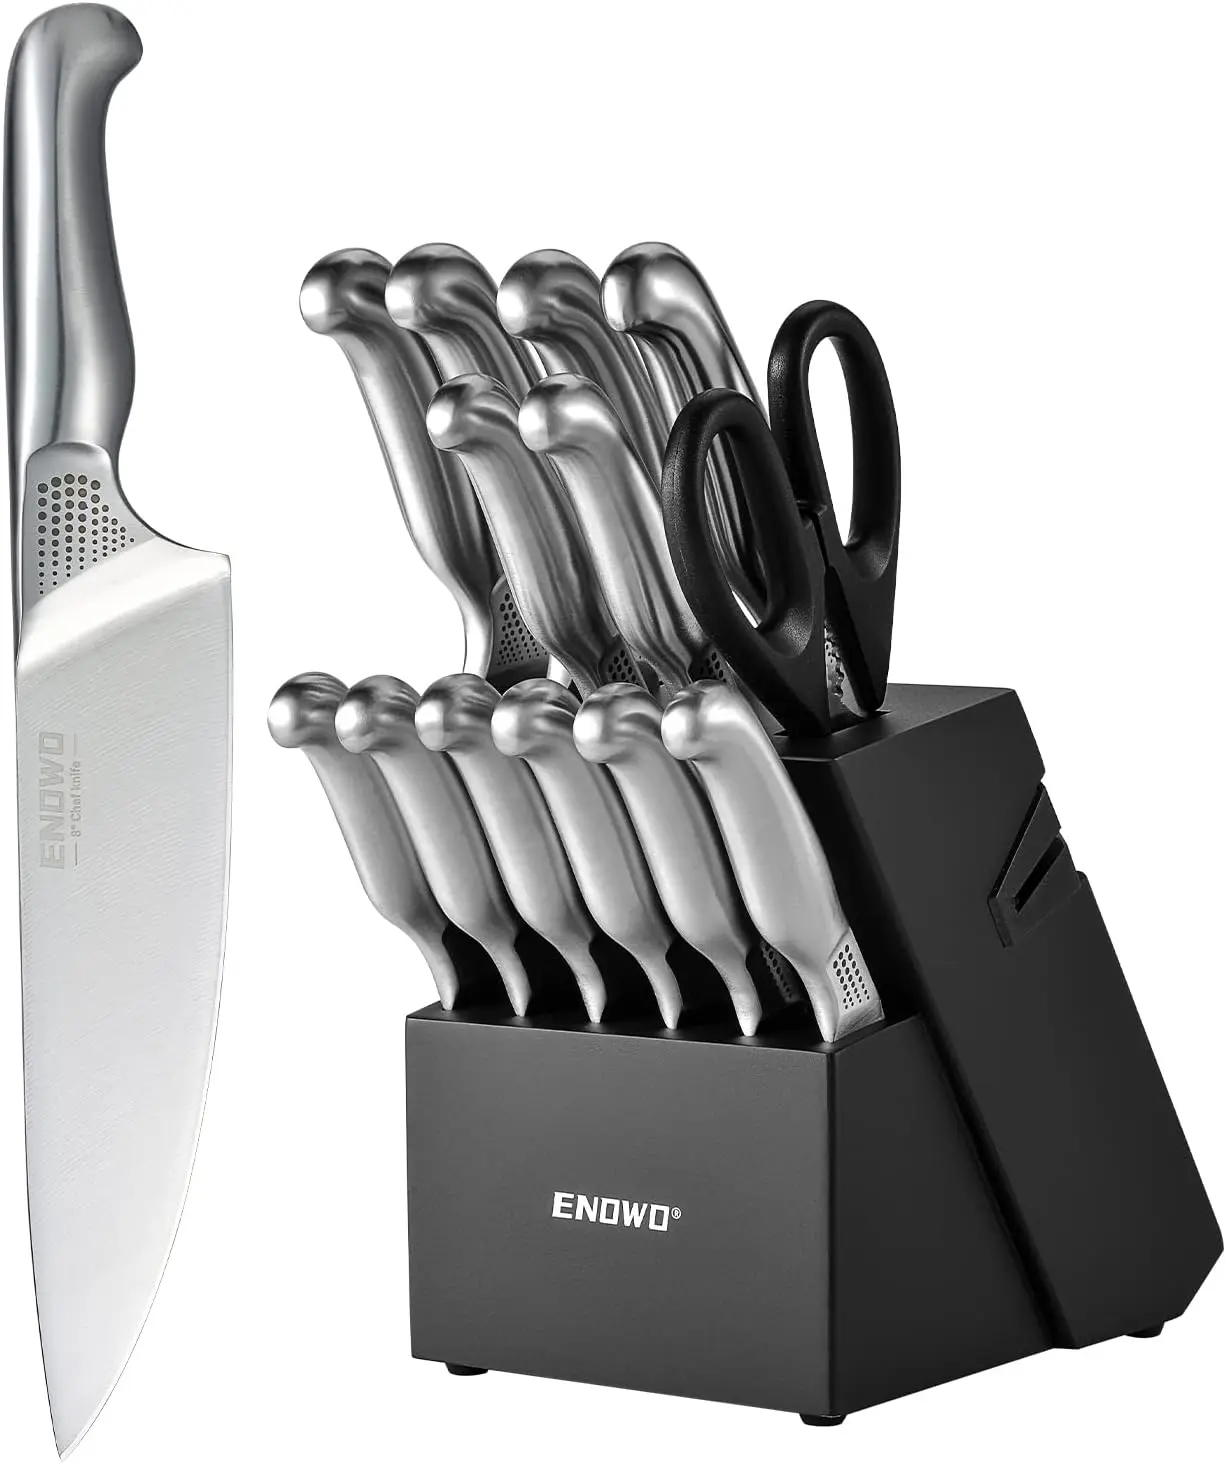 

Набор кухонных ножей с блоком, набор из 14 немецких ножей из нержавеющей стали, набор поварских ножей с ажурной ручкой, встроенные точилки